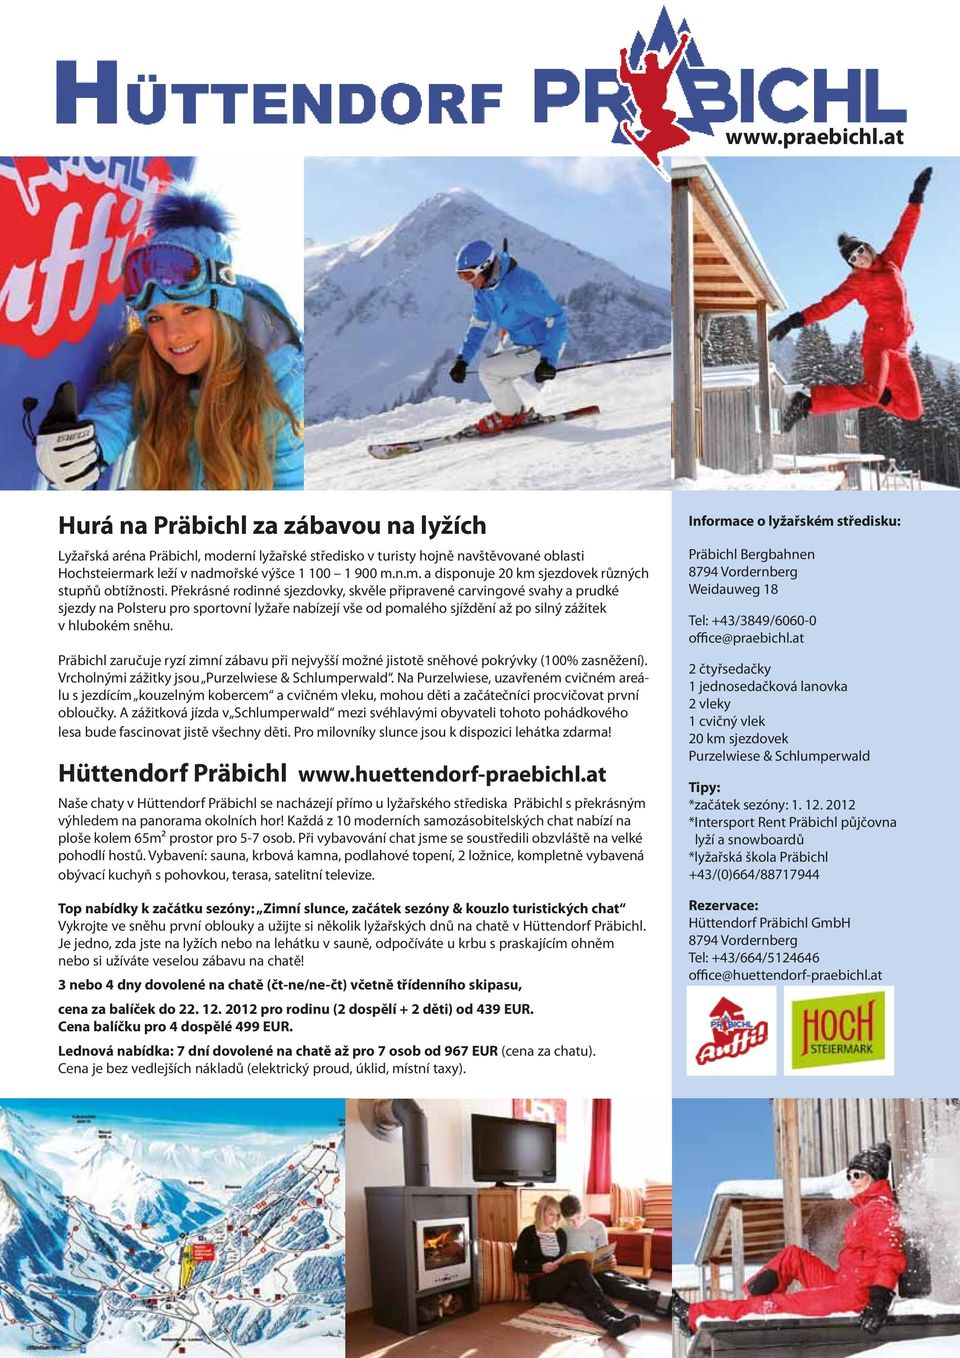 Präbichl zaručuje ryzí zimní zábavu při nejvyšší možné jistotě sněhové pokrývky (100% zasněžení). Vrcholnými zážitky jsou Purzelwiese & Schlumperwald.